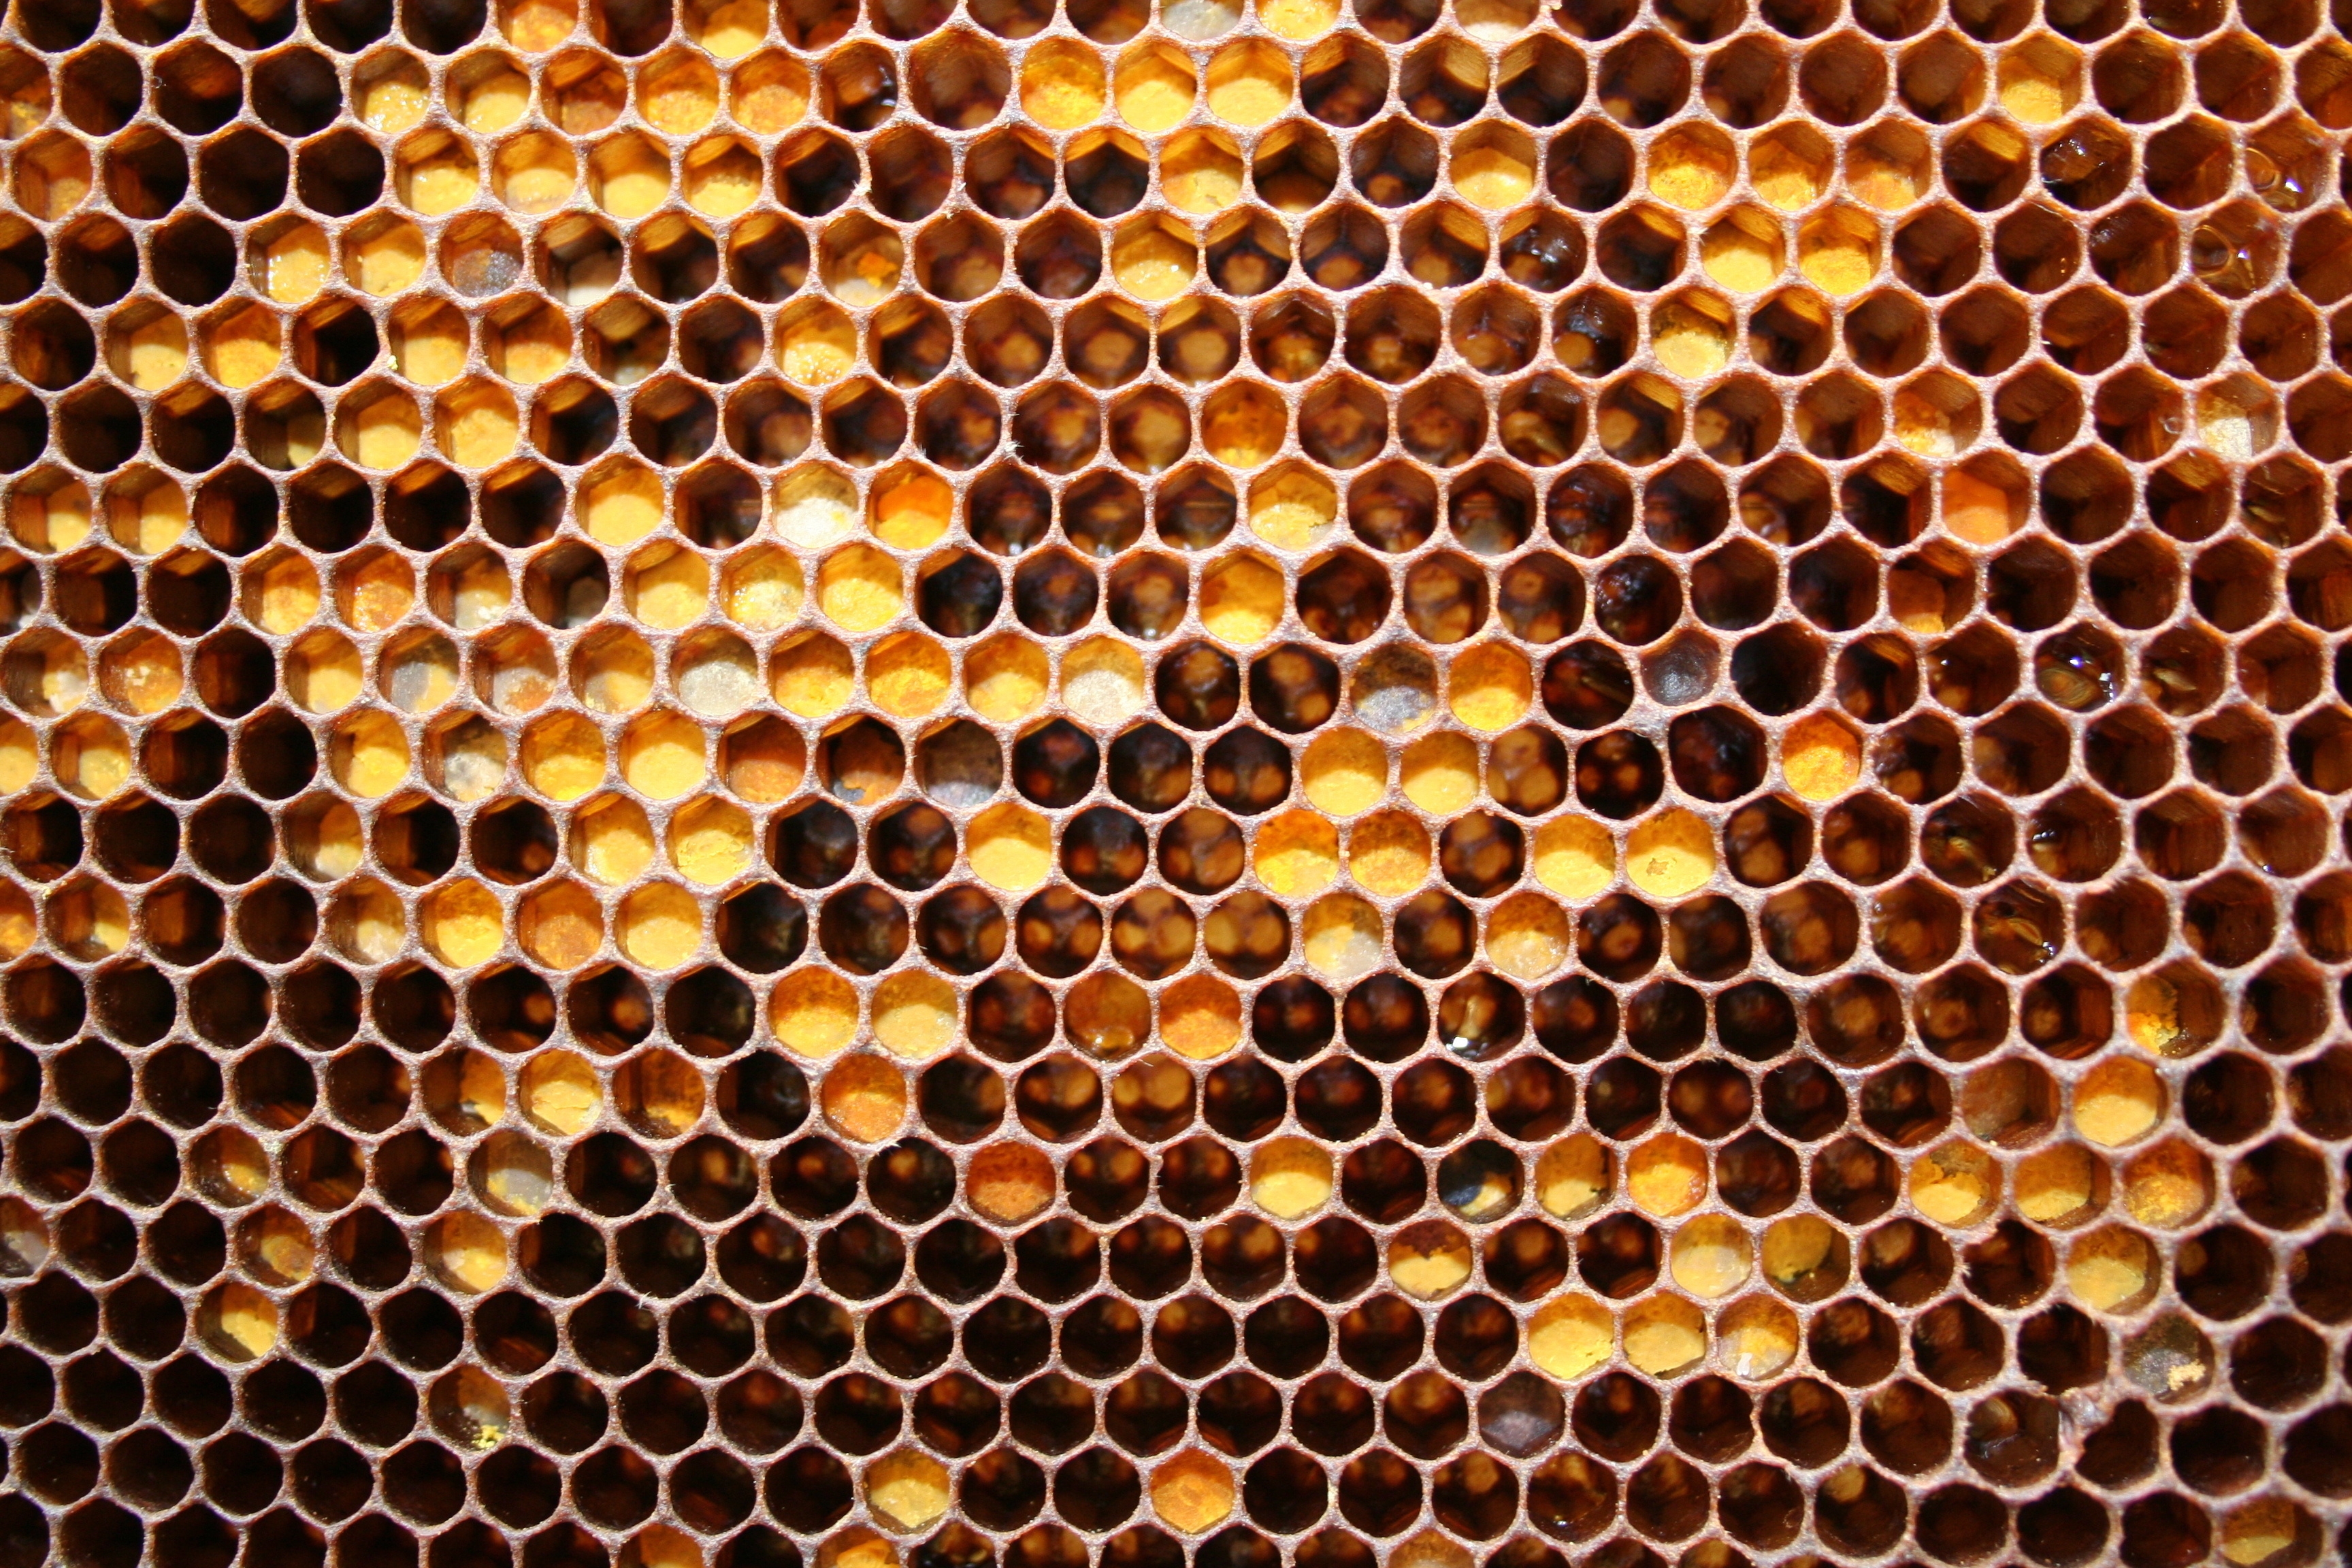 8k Honey Images